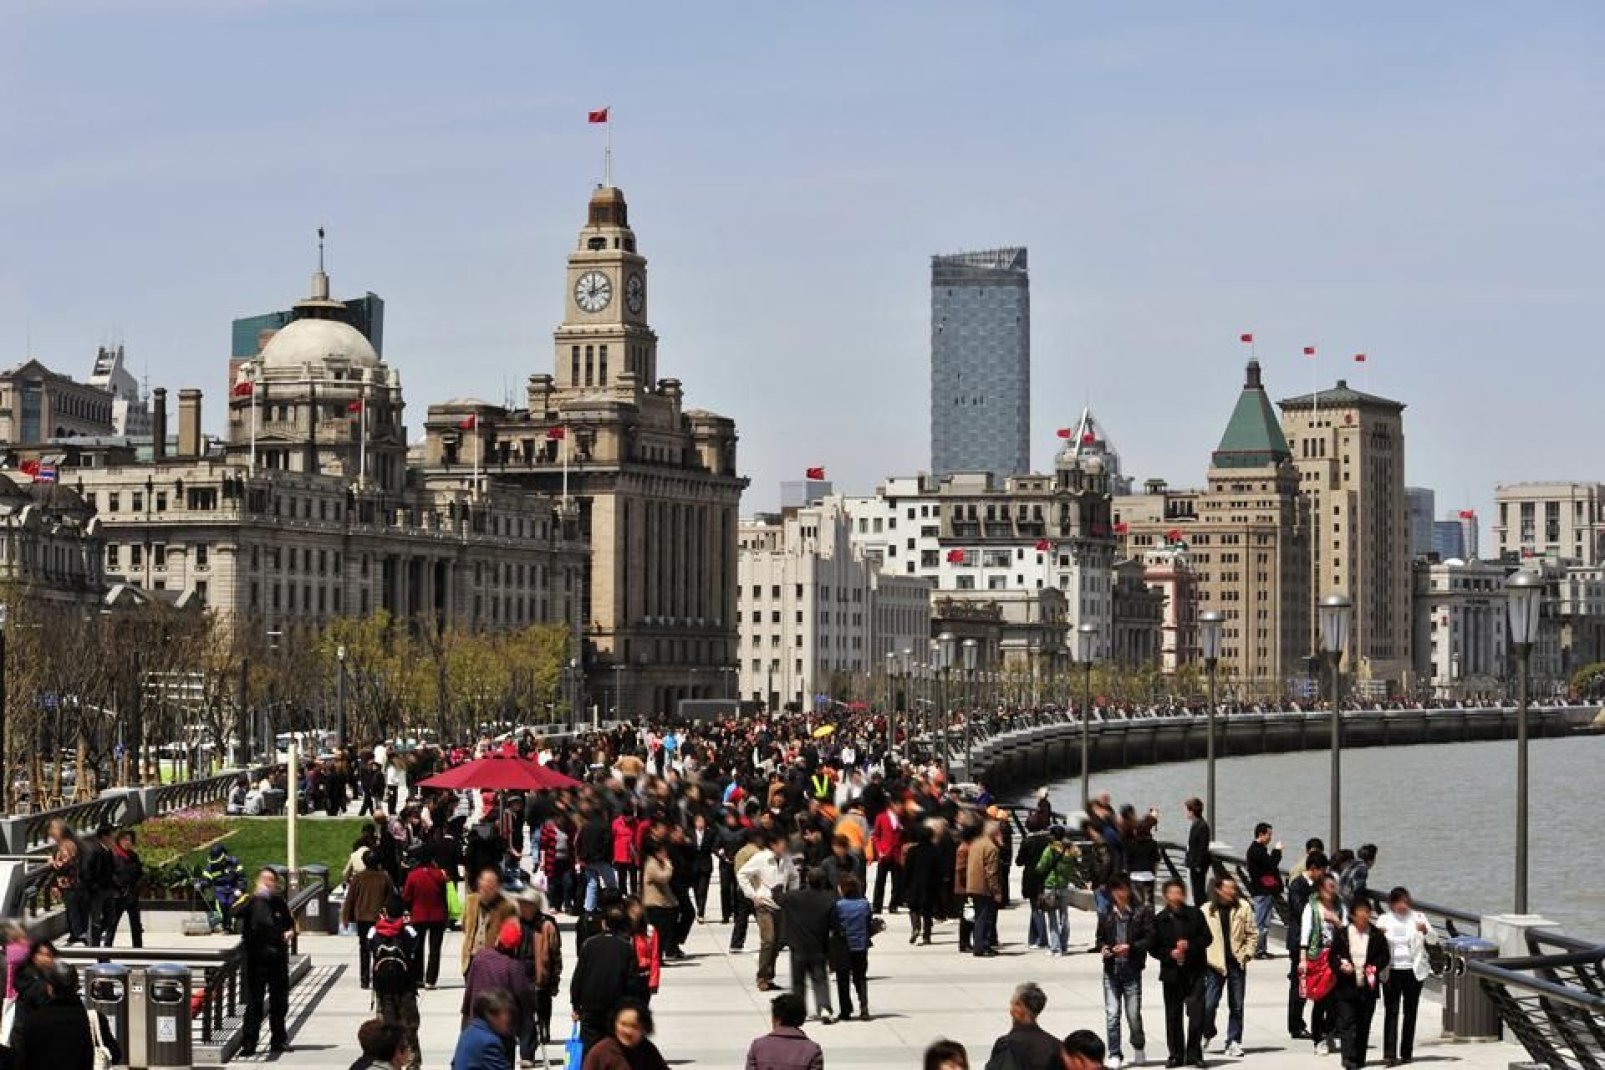 Piacevole spazio aperto pedonale, nel cuore di Shanghai, il Bund è un punto di ritrovo per i turisti ma anche per gli abitanti stessi.